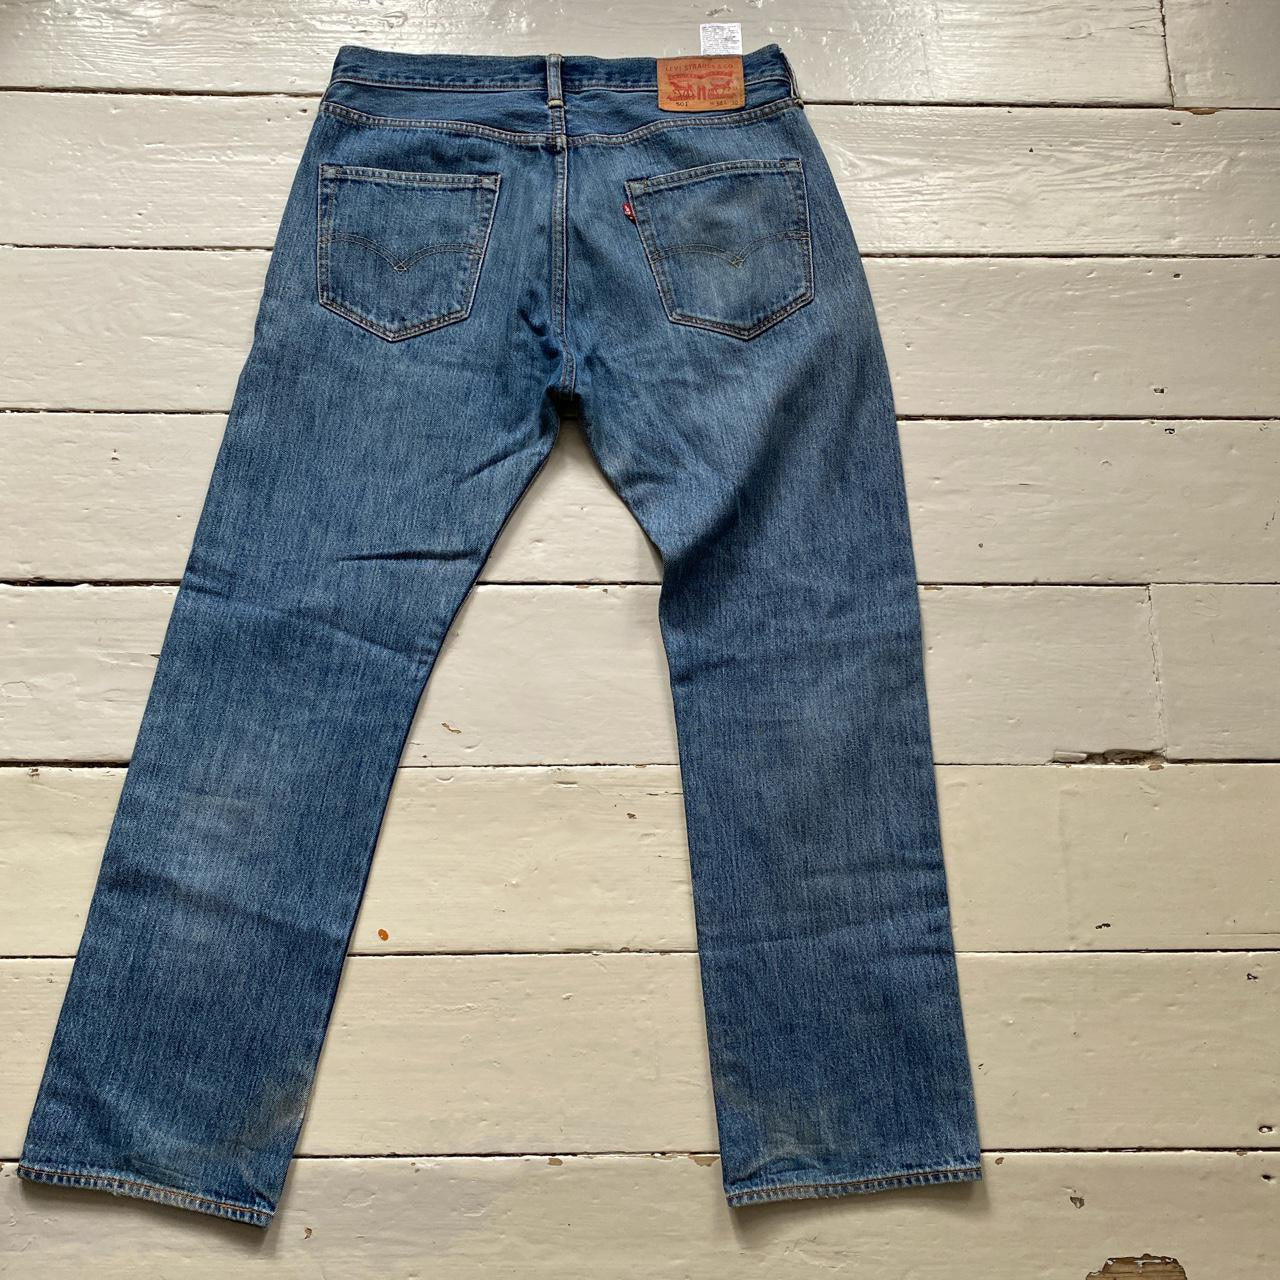 Levis 501 Classic Light Jeans (34/30)